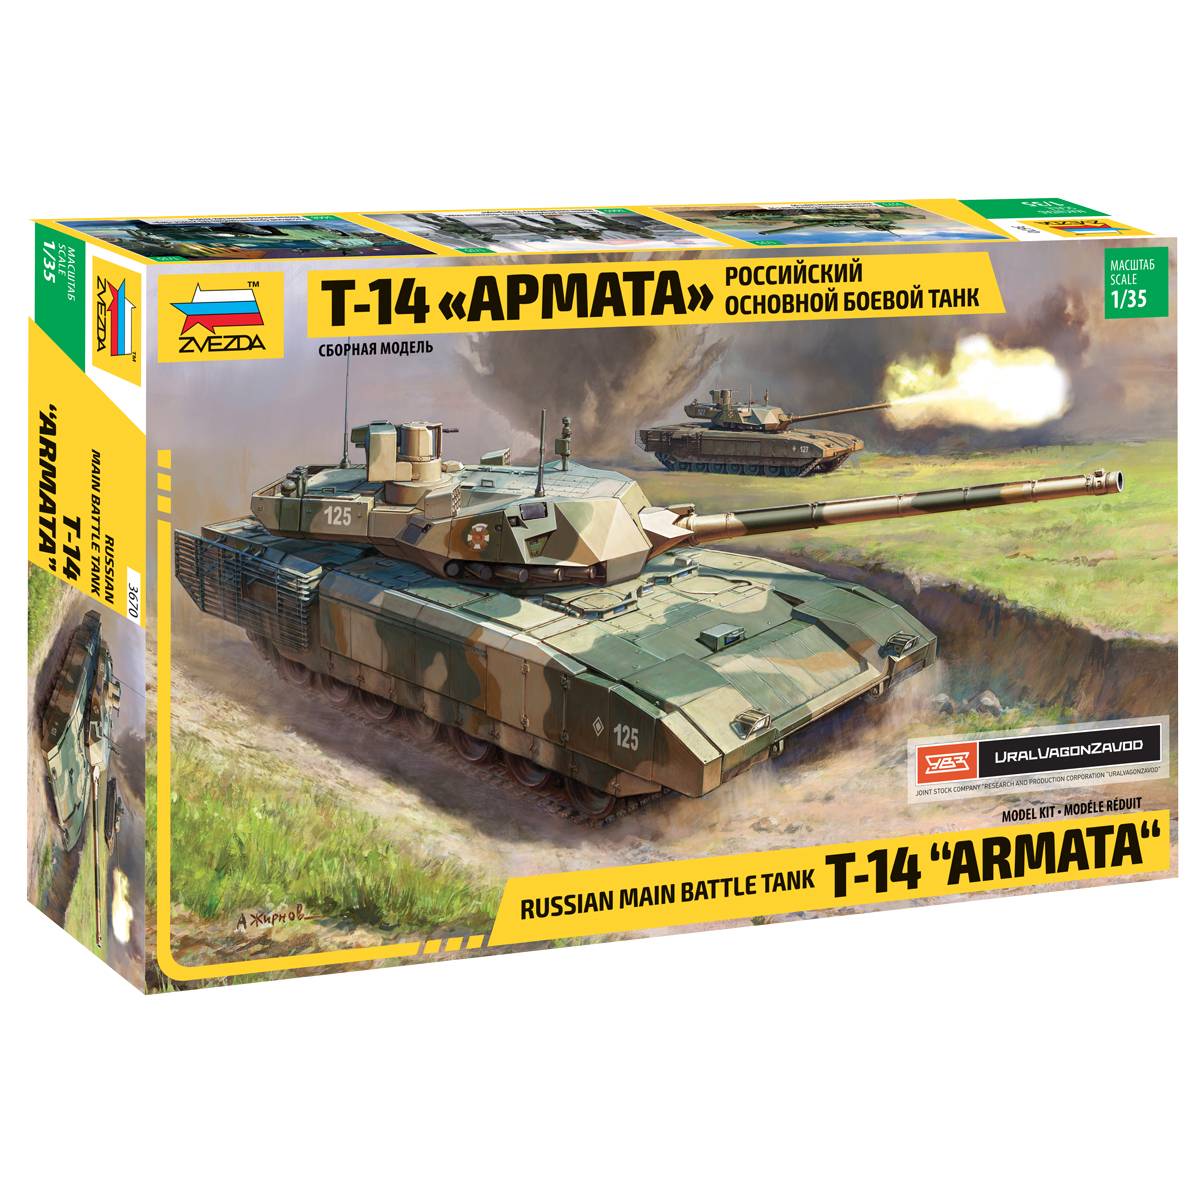 Российский основной боевой танк Т-14 "Армата", сборная модель Звезда 3670з